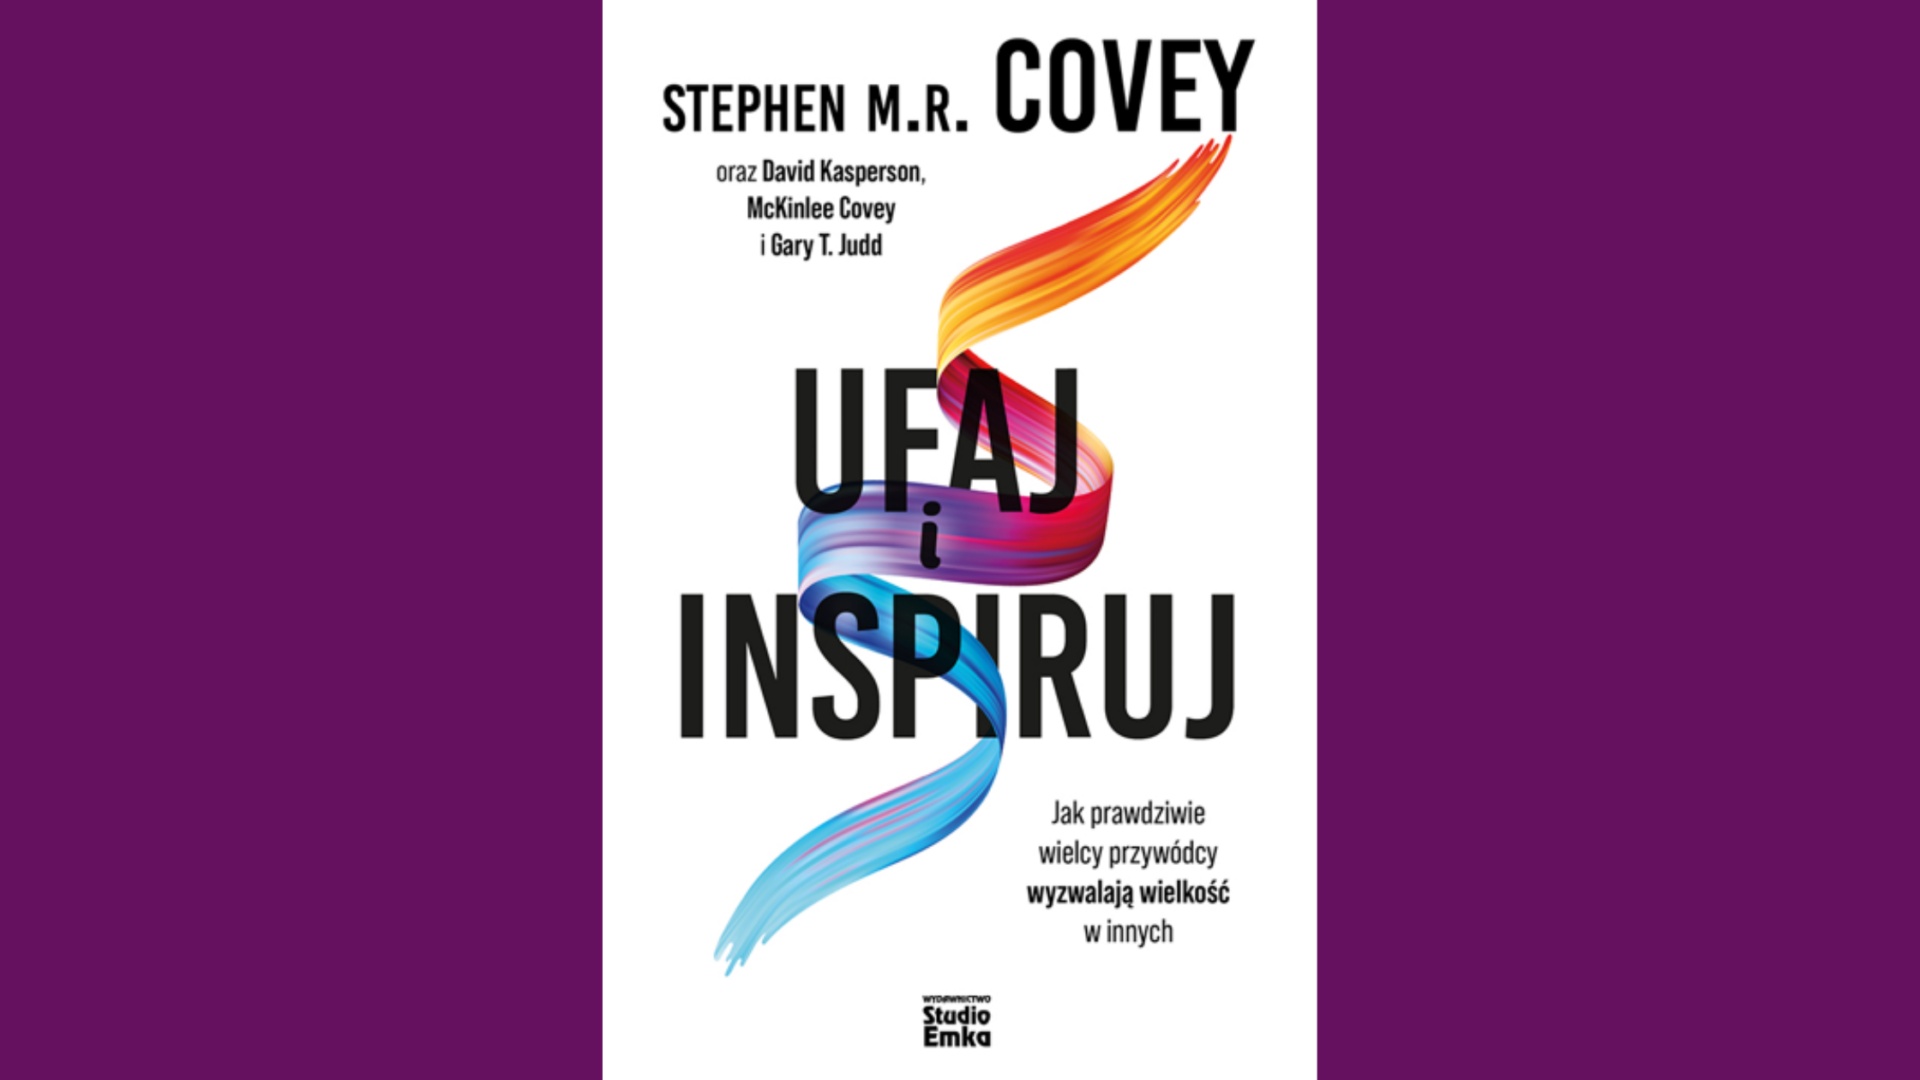 Recenzja książki: “Ufaj i inspiruj. Jak prawdziwie wielcy przywódcy wyzwalają wielkość w innych” - Stephen M. R. Covey